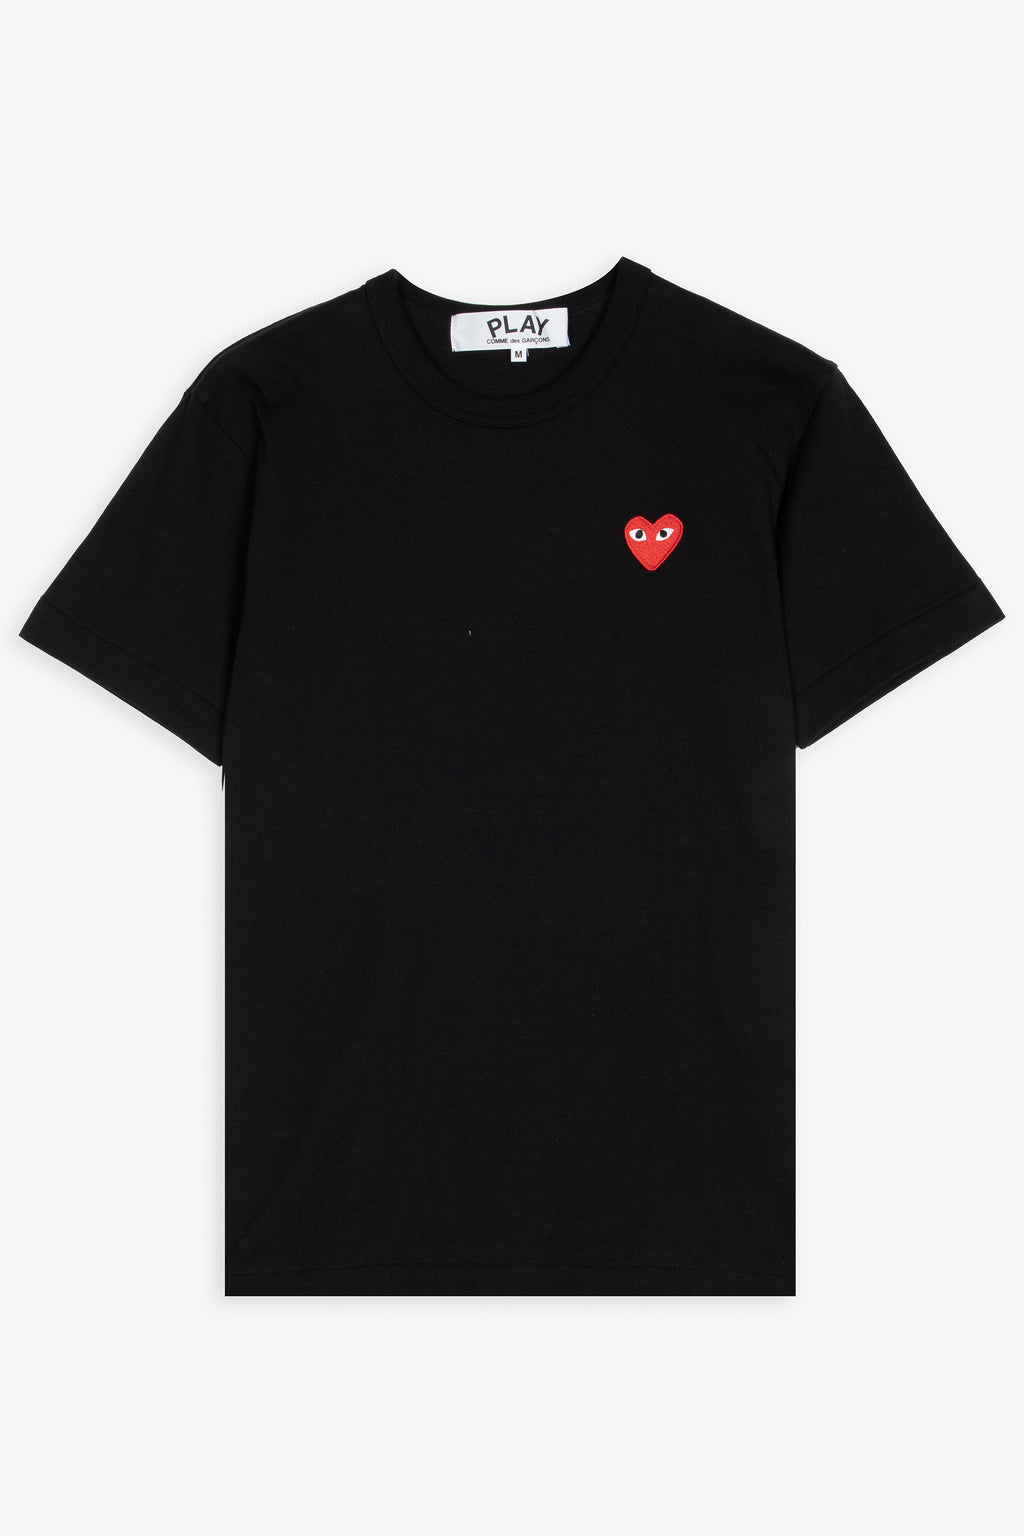 alt-image__T-shirt-nera-con-cuore-rosso-al-petto